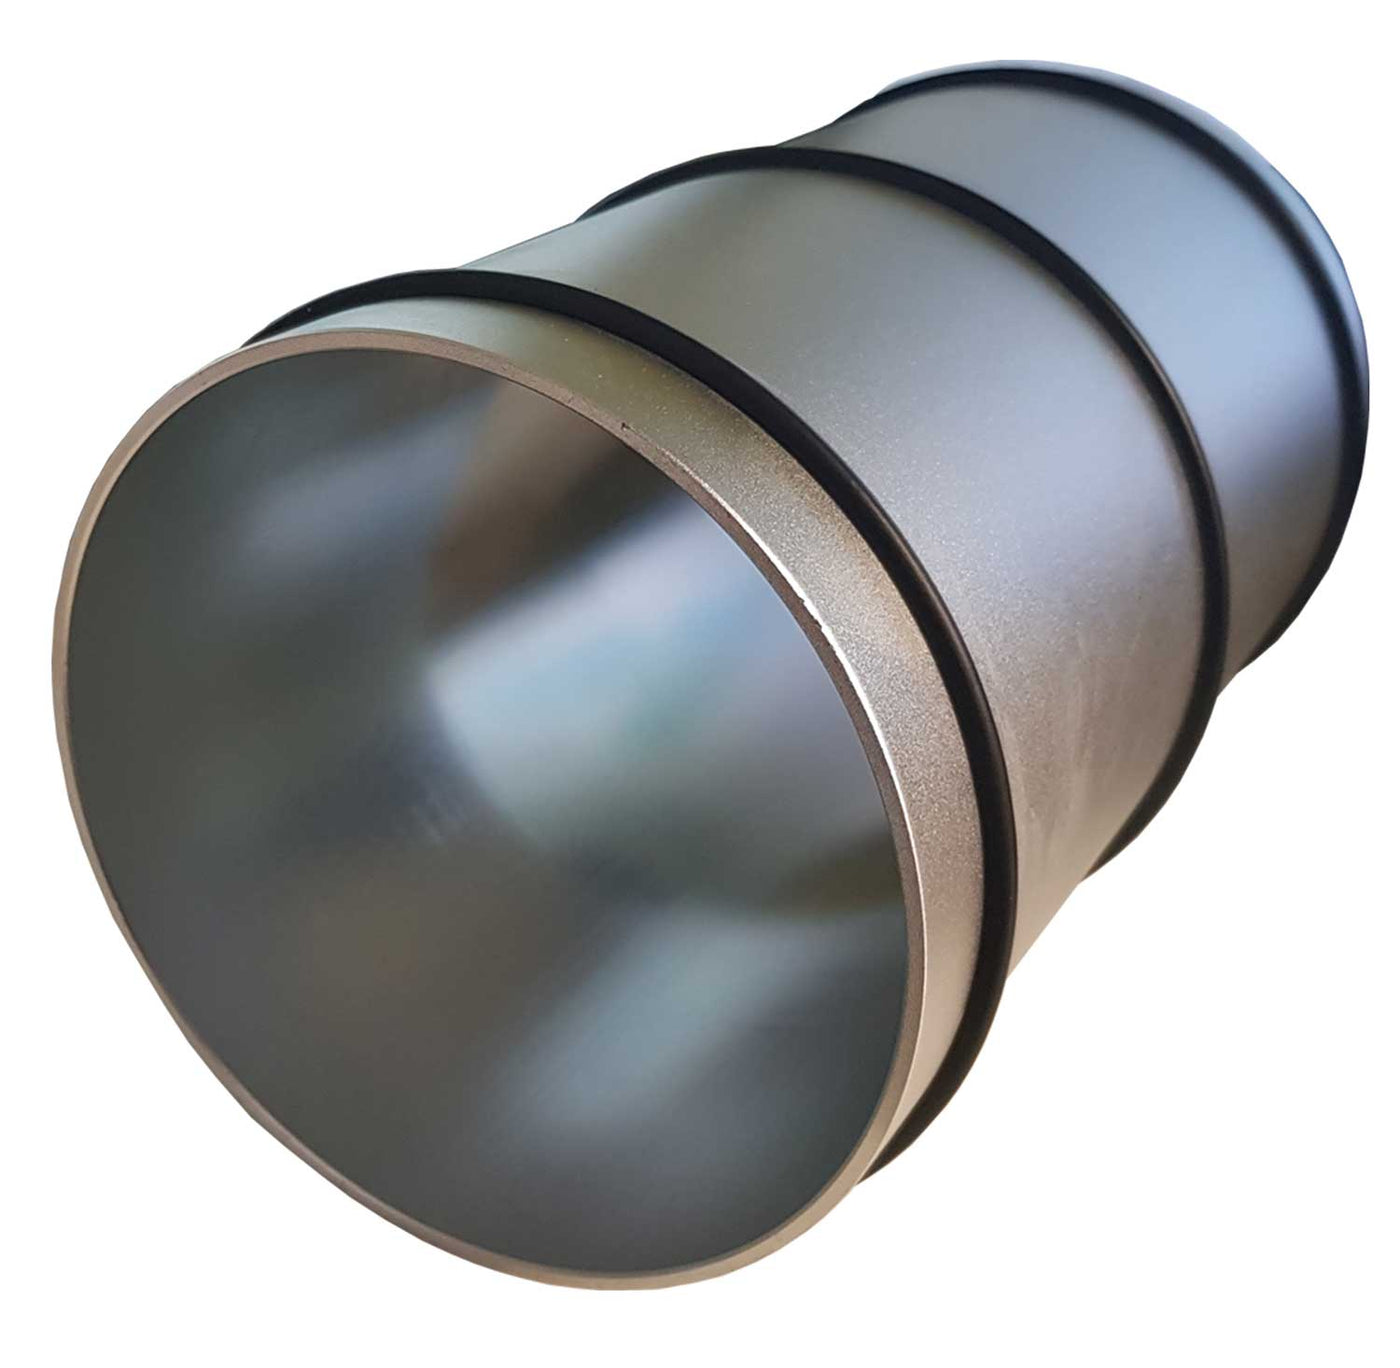 Rouleau alu Rolla- En Aluminium- diametre 15cm - Complet avec trois anneaux en caoutchouc